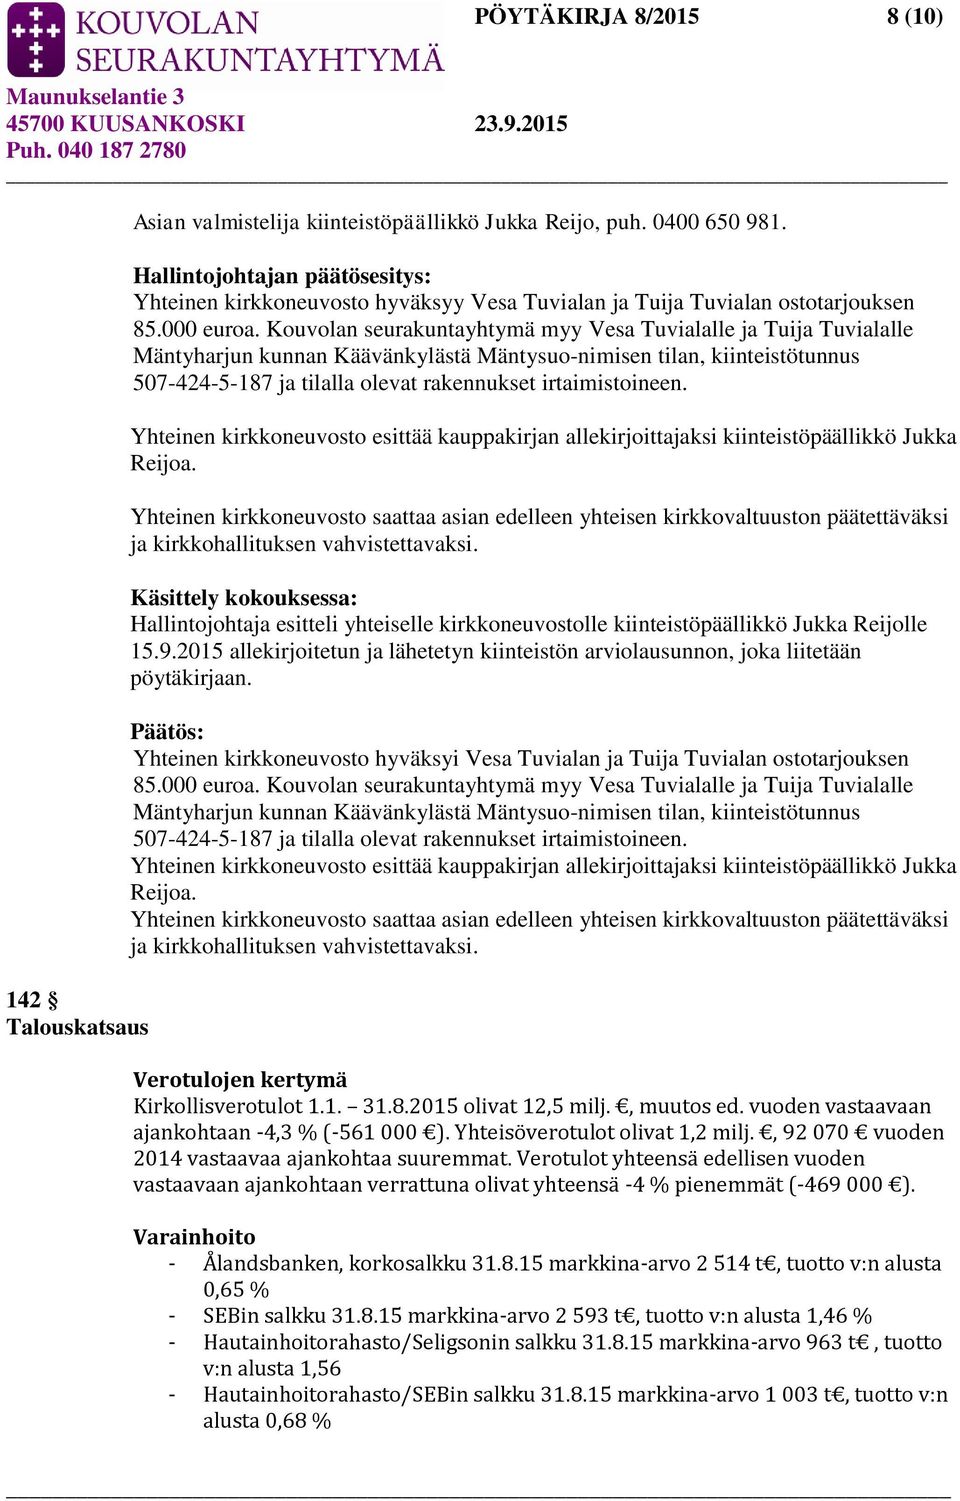 Kouvolan seurakuntayhtymä myy Vesa Tuvialalle ja Tuija Tuvialalle Mäntyharjun kunnan Käävänkylästä Mäntysuo-nimisen tilan, kiinteistötunnus 507-424-5-187 ja tilalla olevat rakennukset irtaimistoineen.